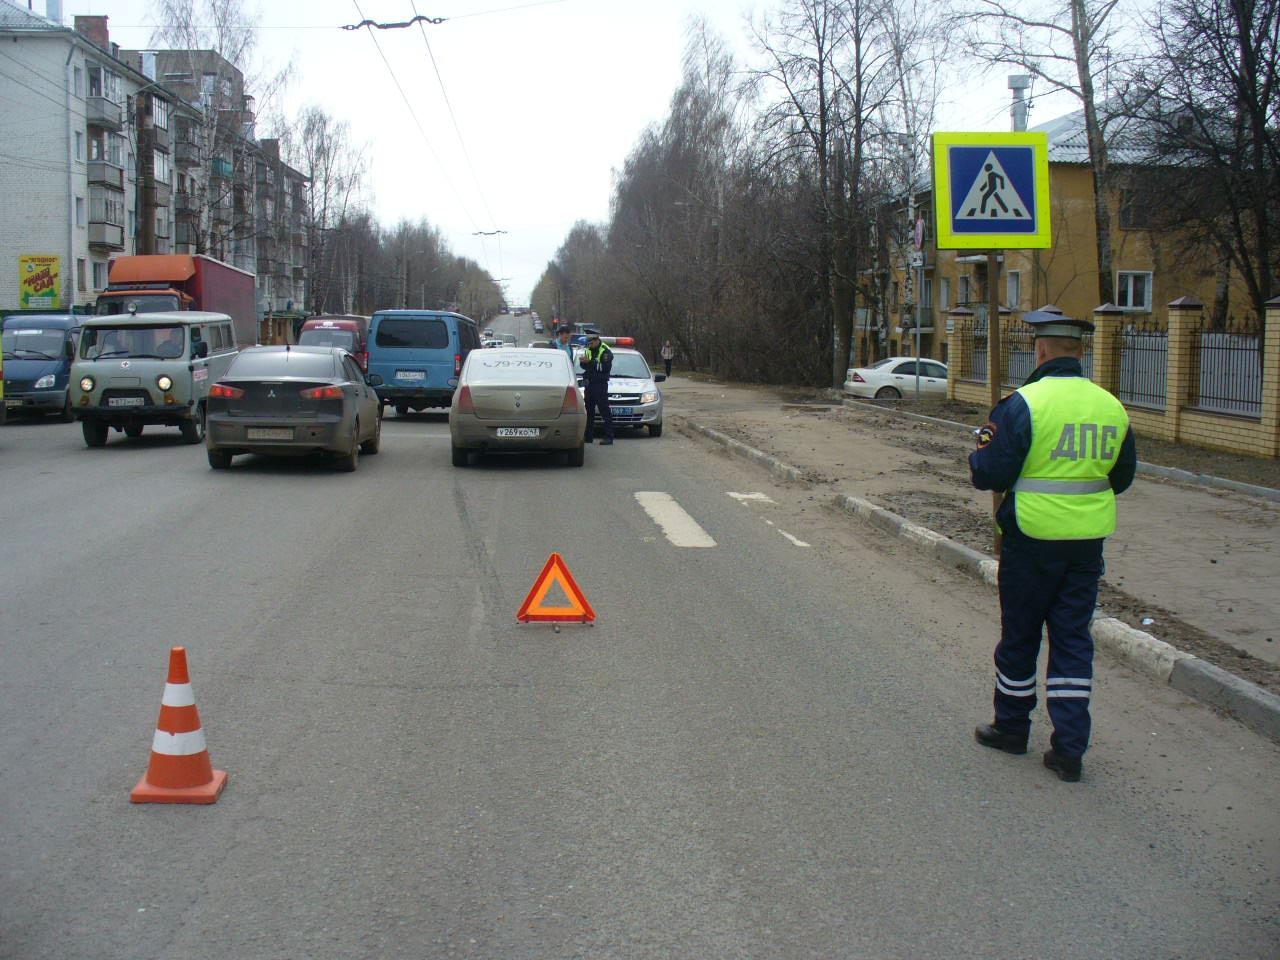 В Кирове водитель такси сбил пешехода